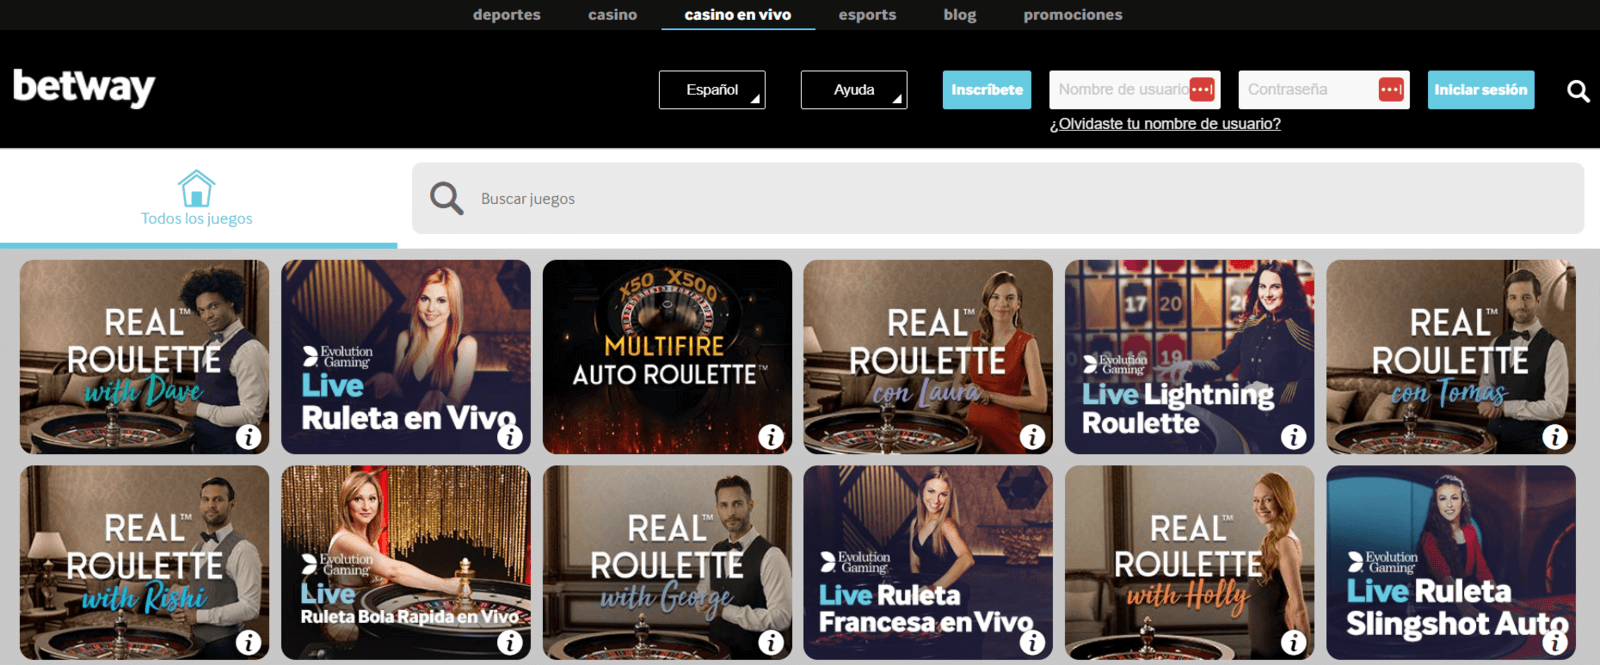 Betway casino en vivo online de España